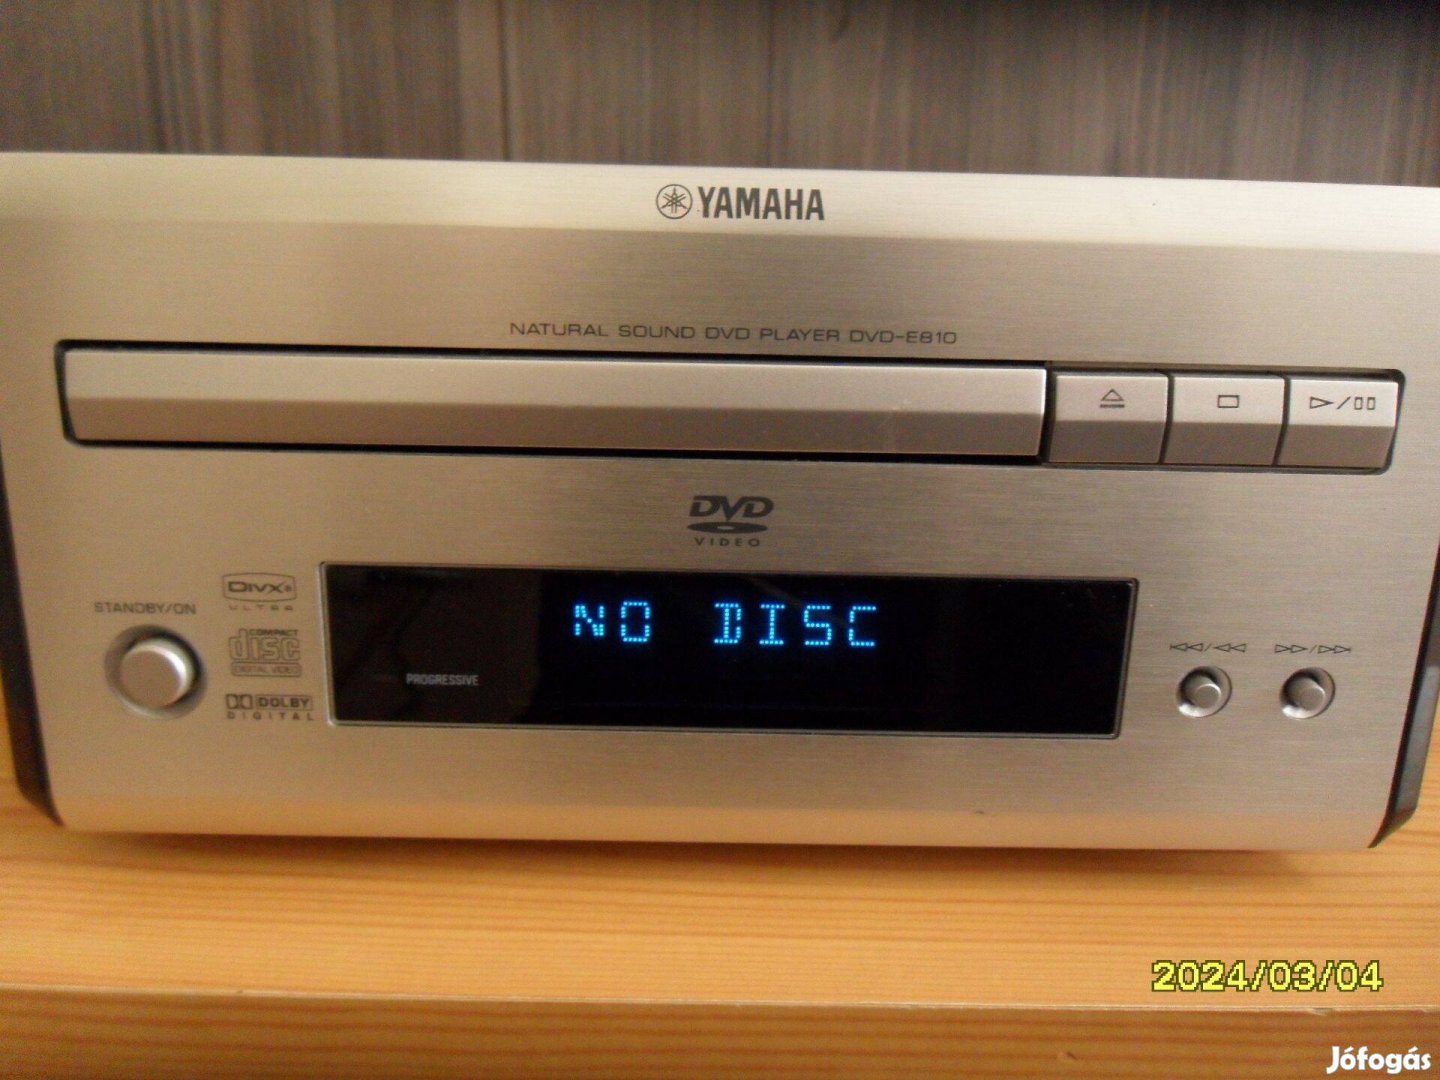 Yamaha mini dvd